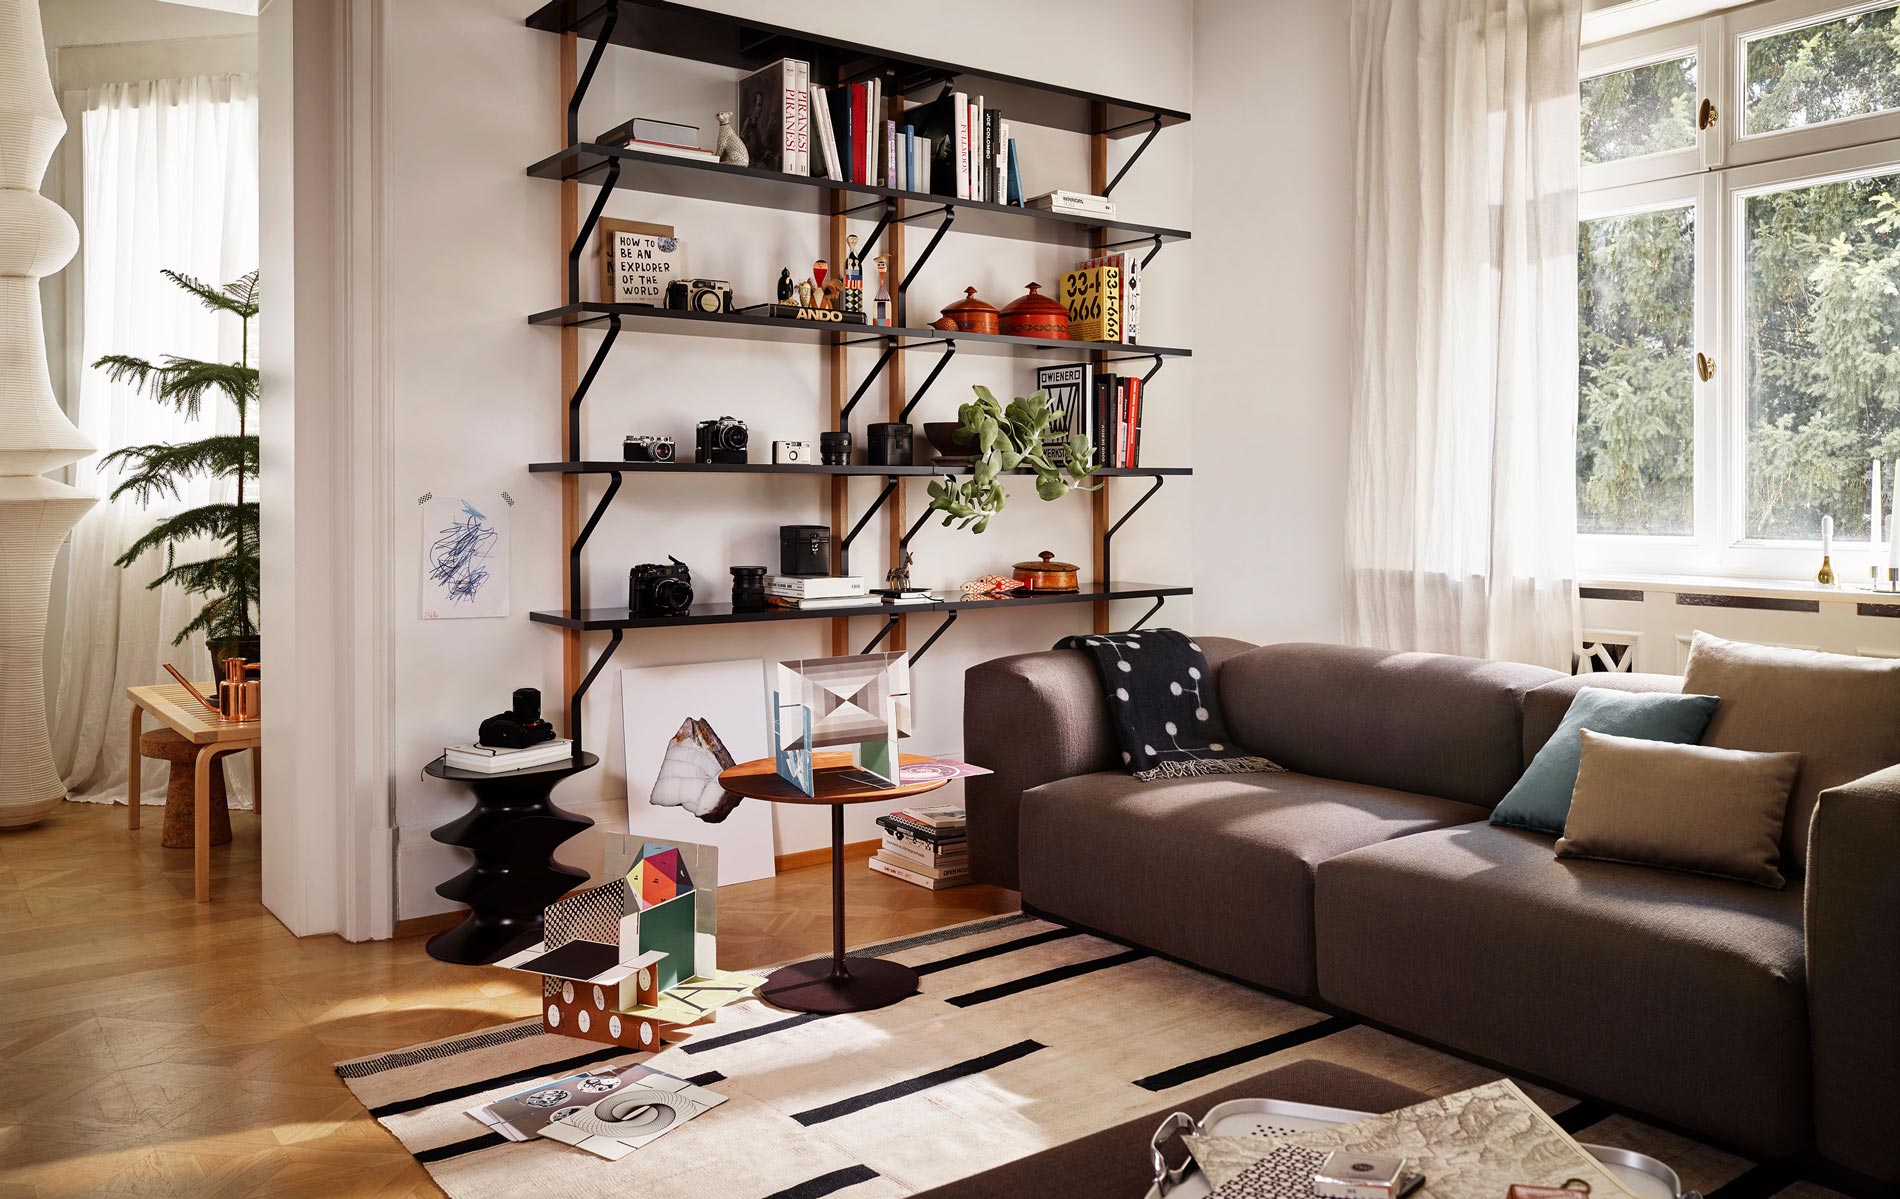 Entdecken Sie das Soft Modular Sofa von Morrison in verschiedenen Farben bei LIVINGforme.de 